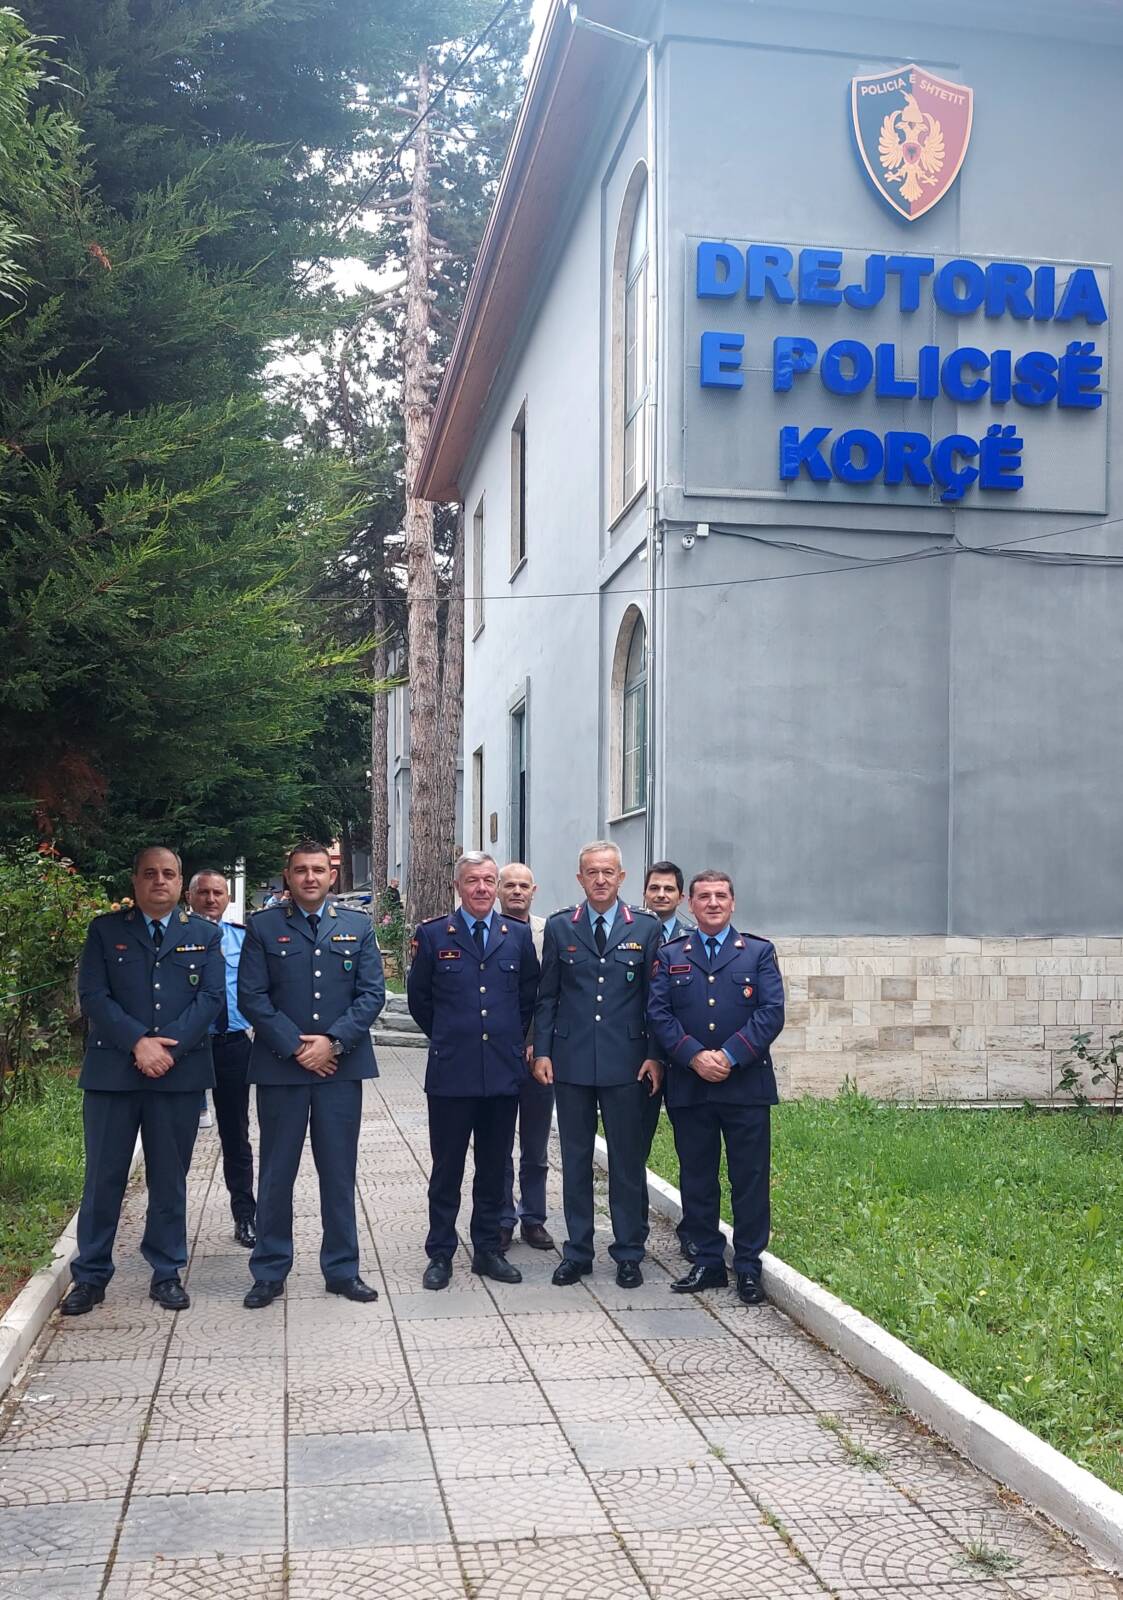 Συνάντηση του Γενικού Περιφερειακού Αστυνομικού Διευθυντή Δυτικής Μακεδονίας, με ομόλογους υπηρεσιακούς παράγοντες της Αλβανικής Αστυνομίας στην Κορυτσά